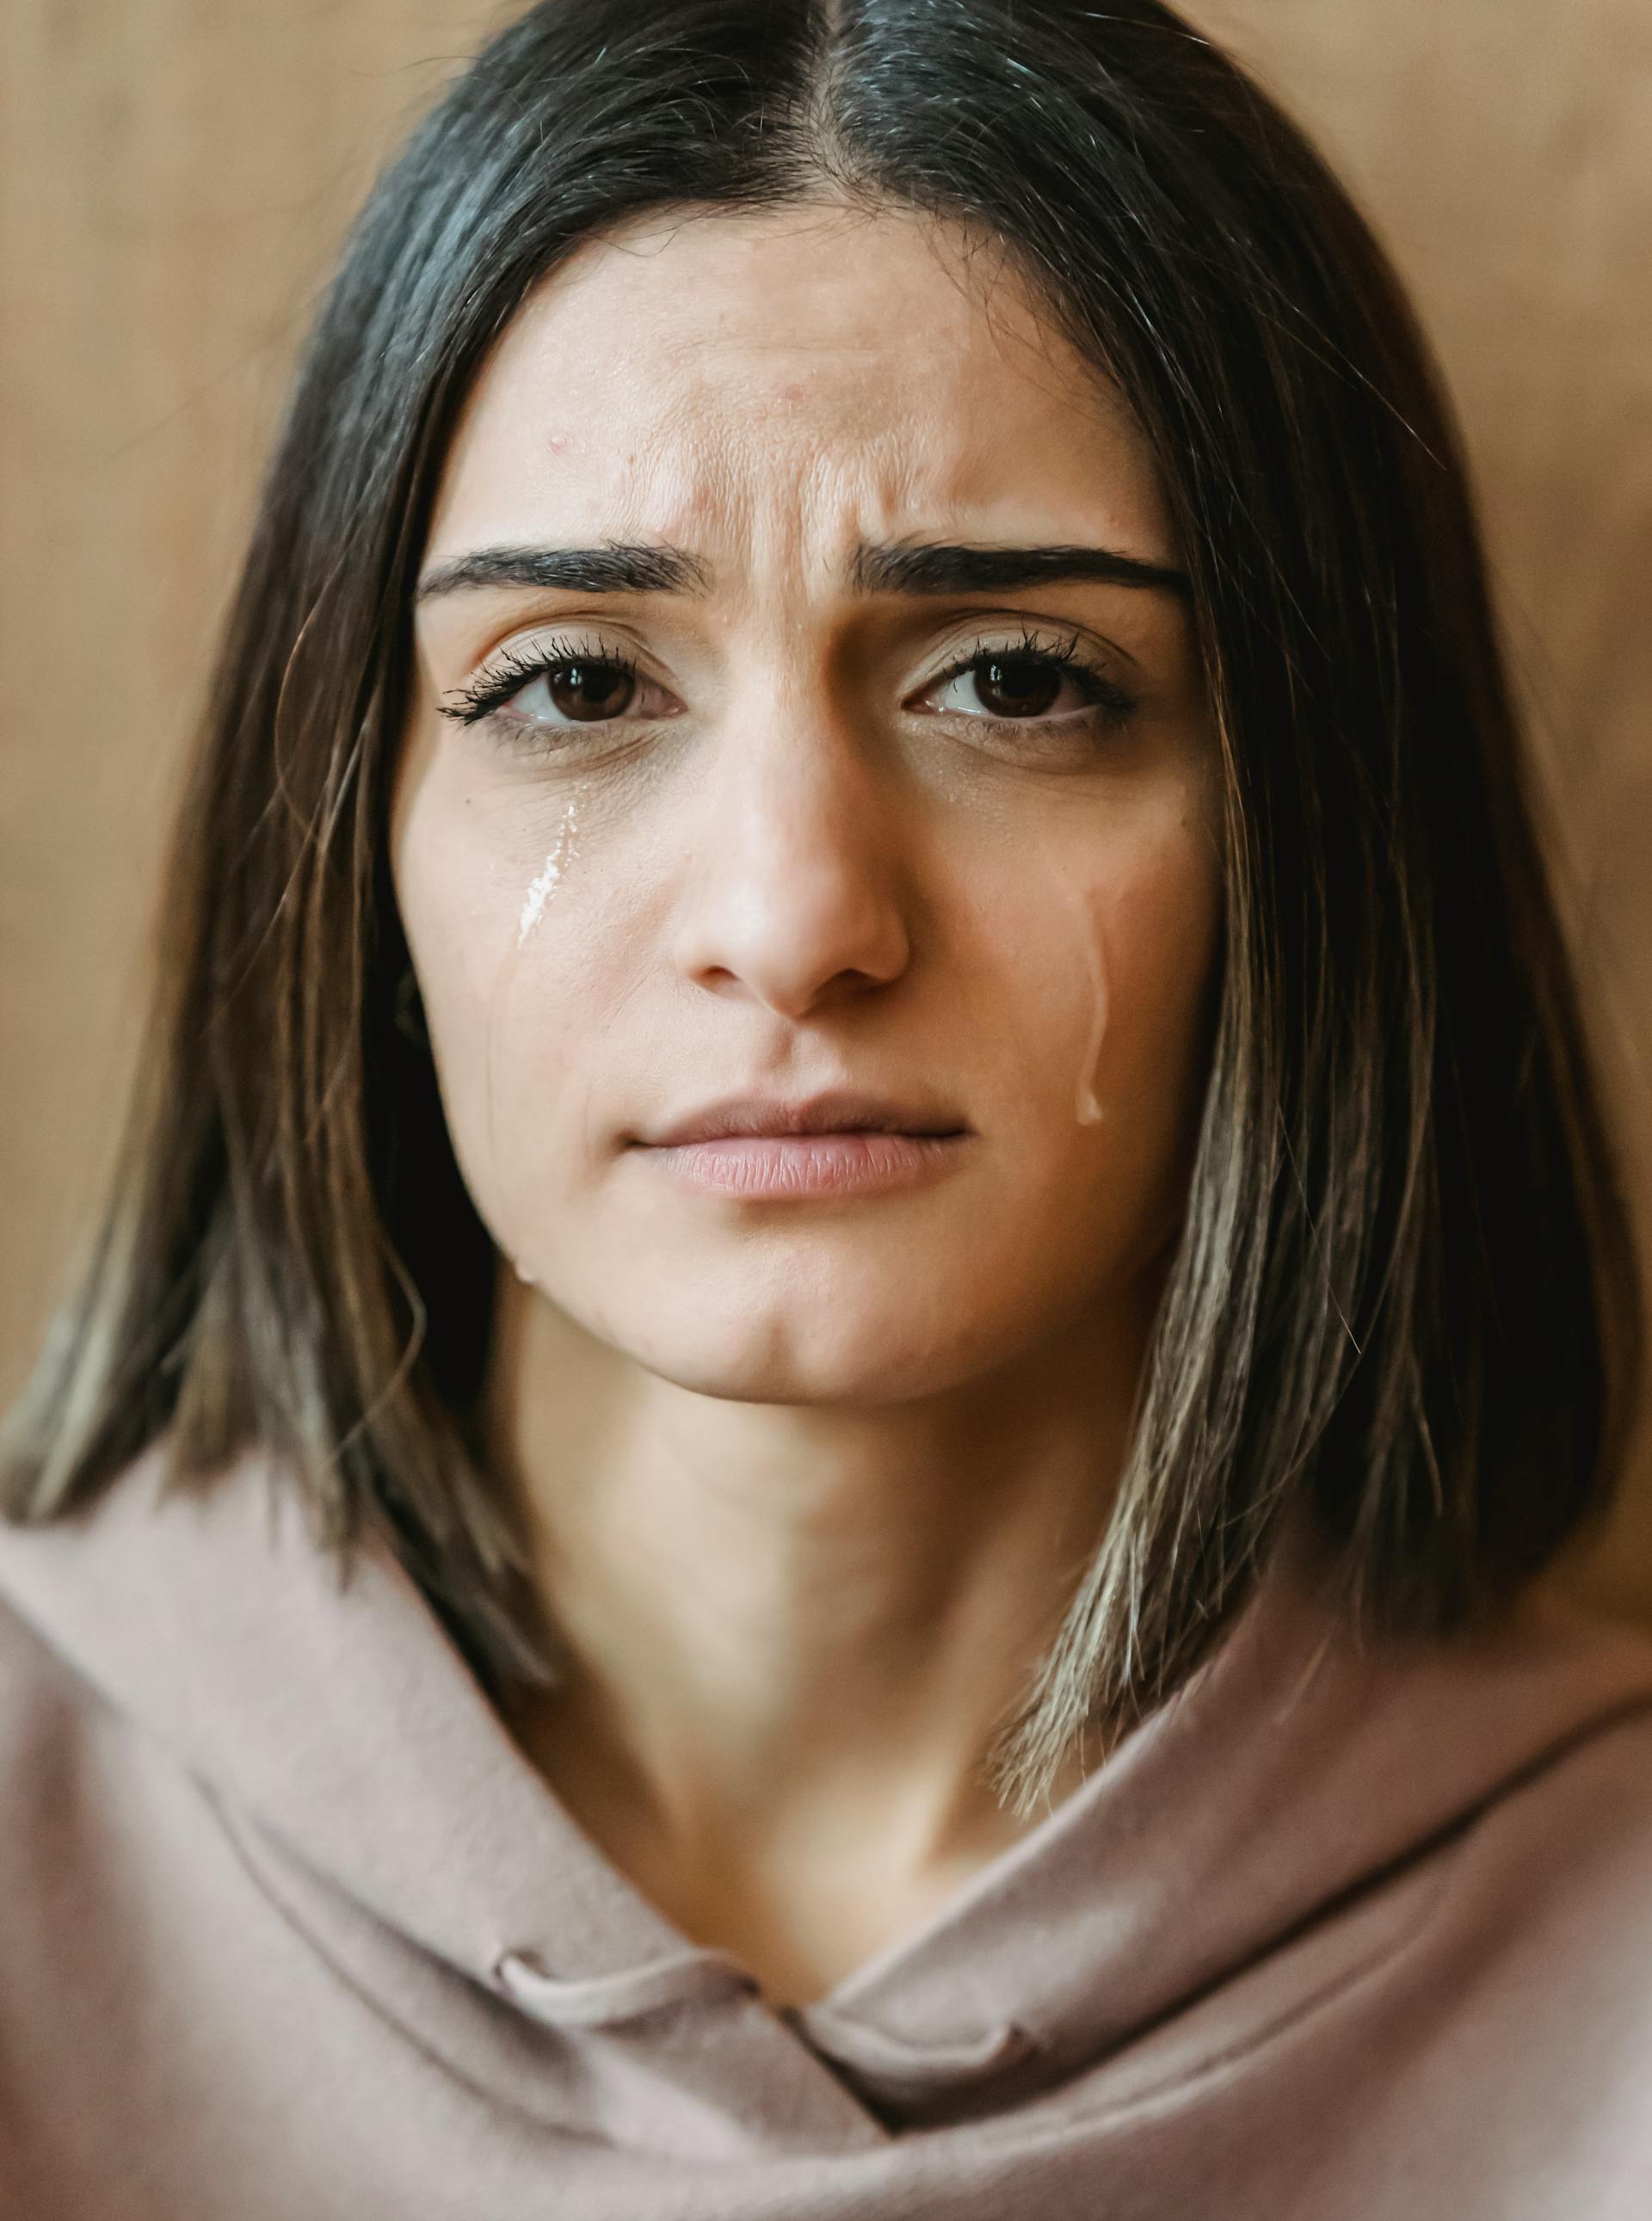 Una mujer triste con los ojos llorosos | Fuente: Pexels